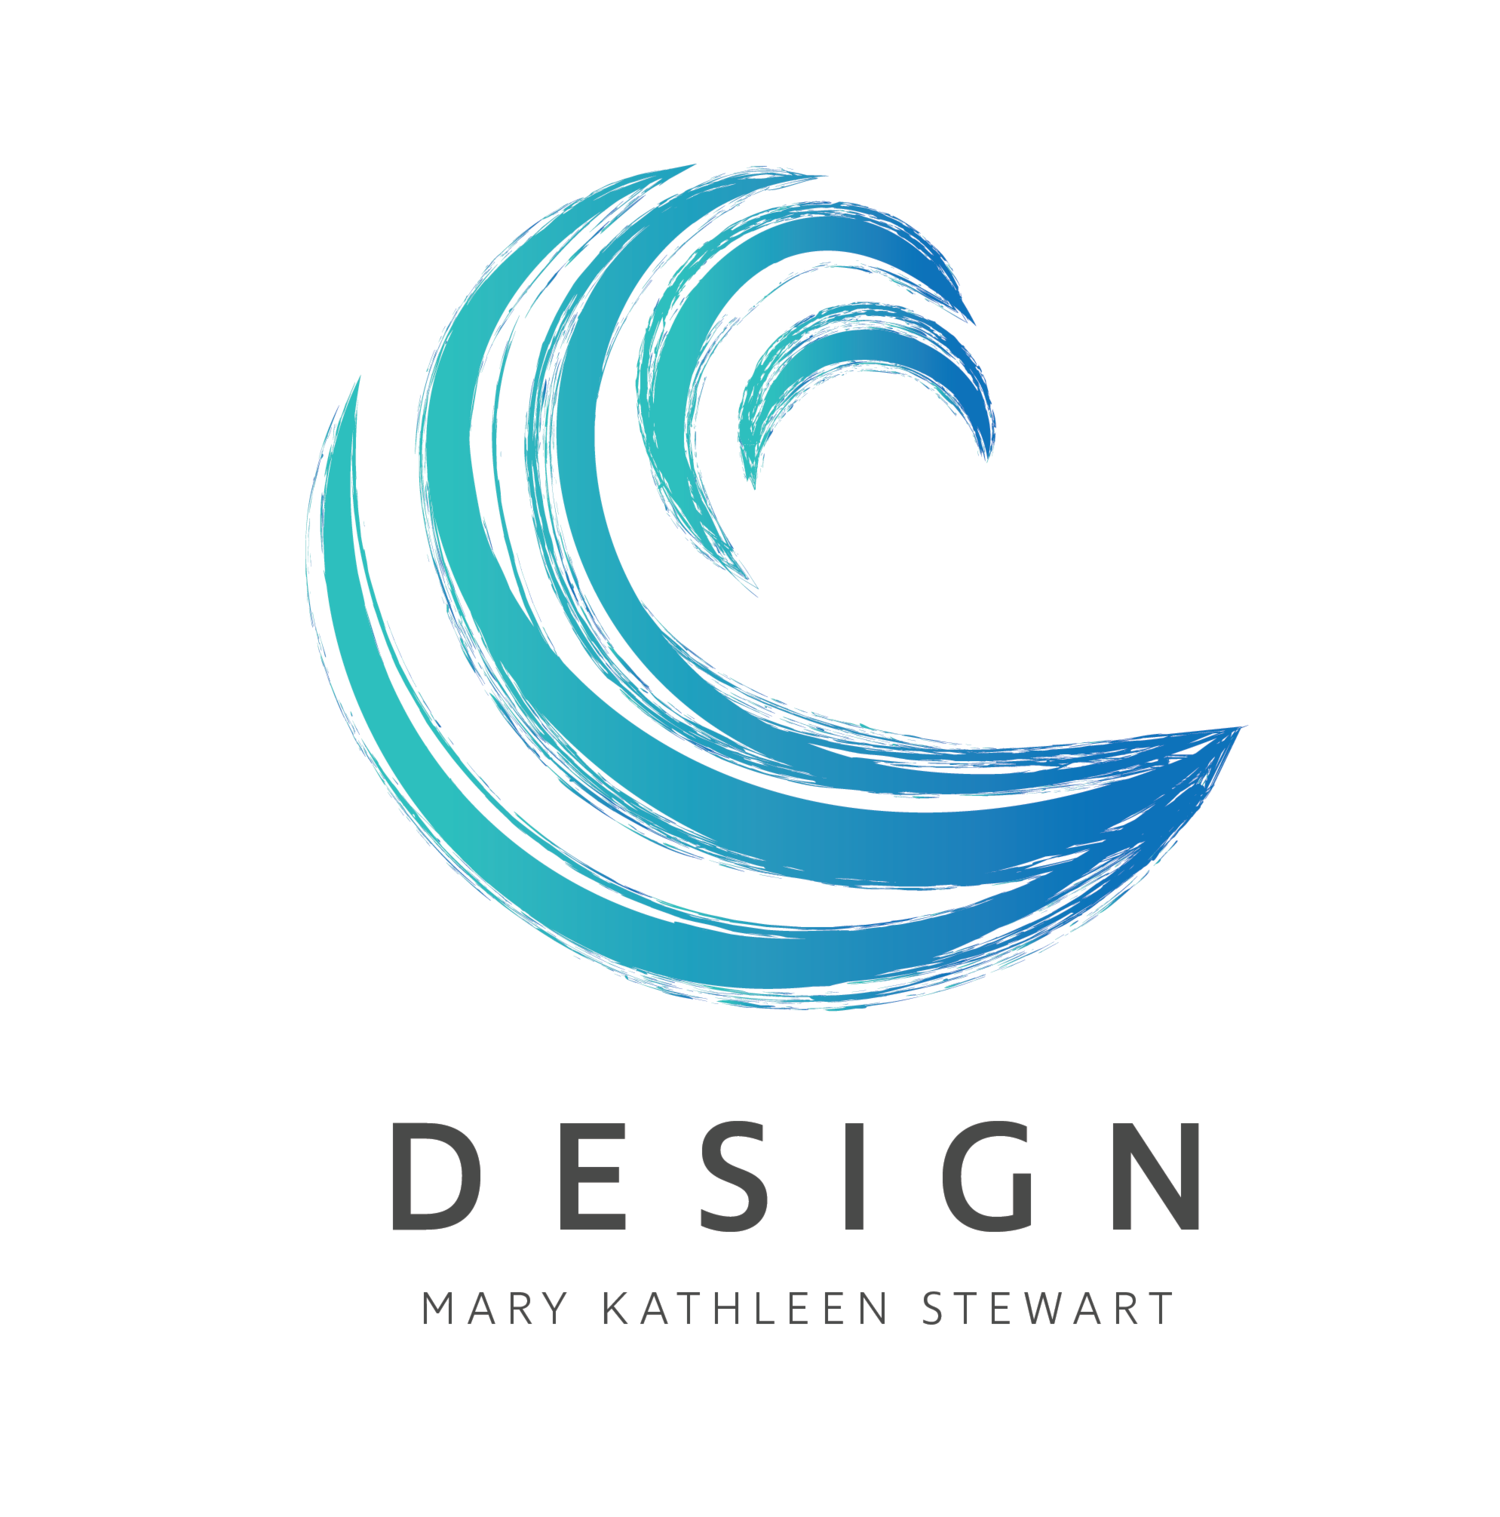 MARY KATHLEEN STEWART DESIGN